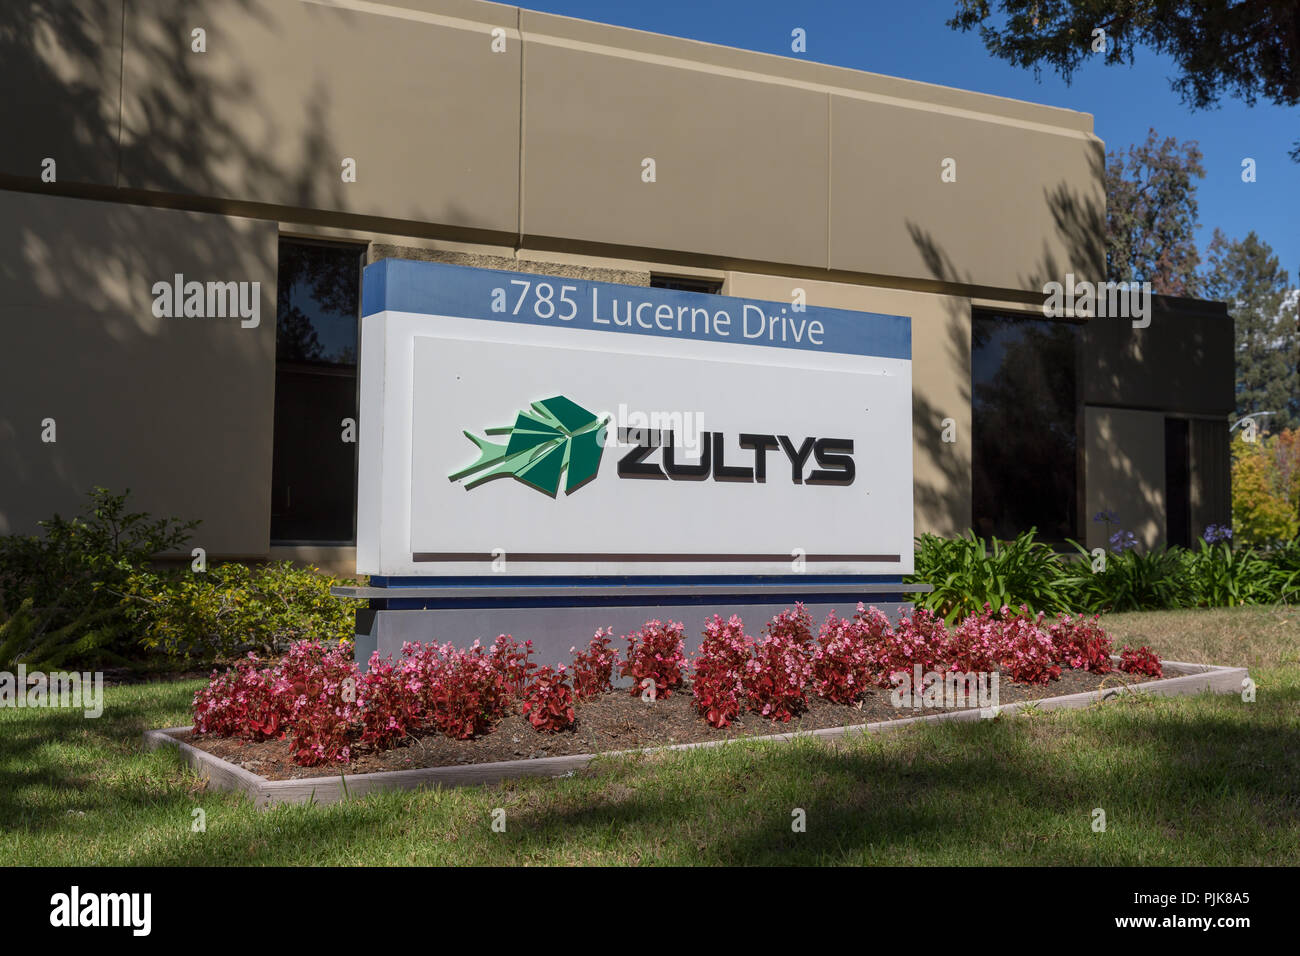 Zultys, sign on Lucerne Drive, Sunnyvale, California Stock Photo